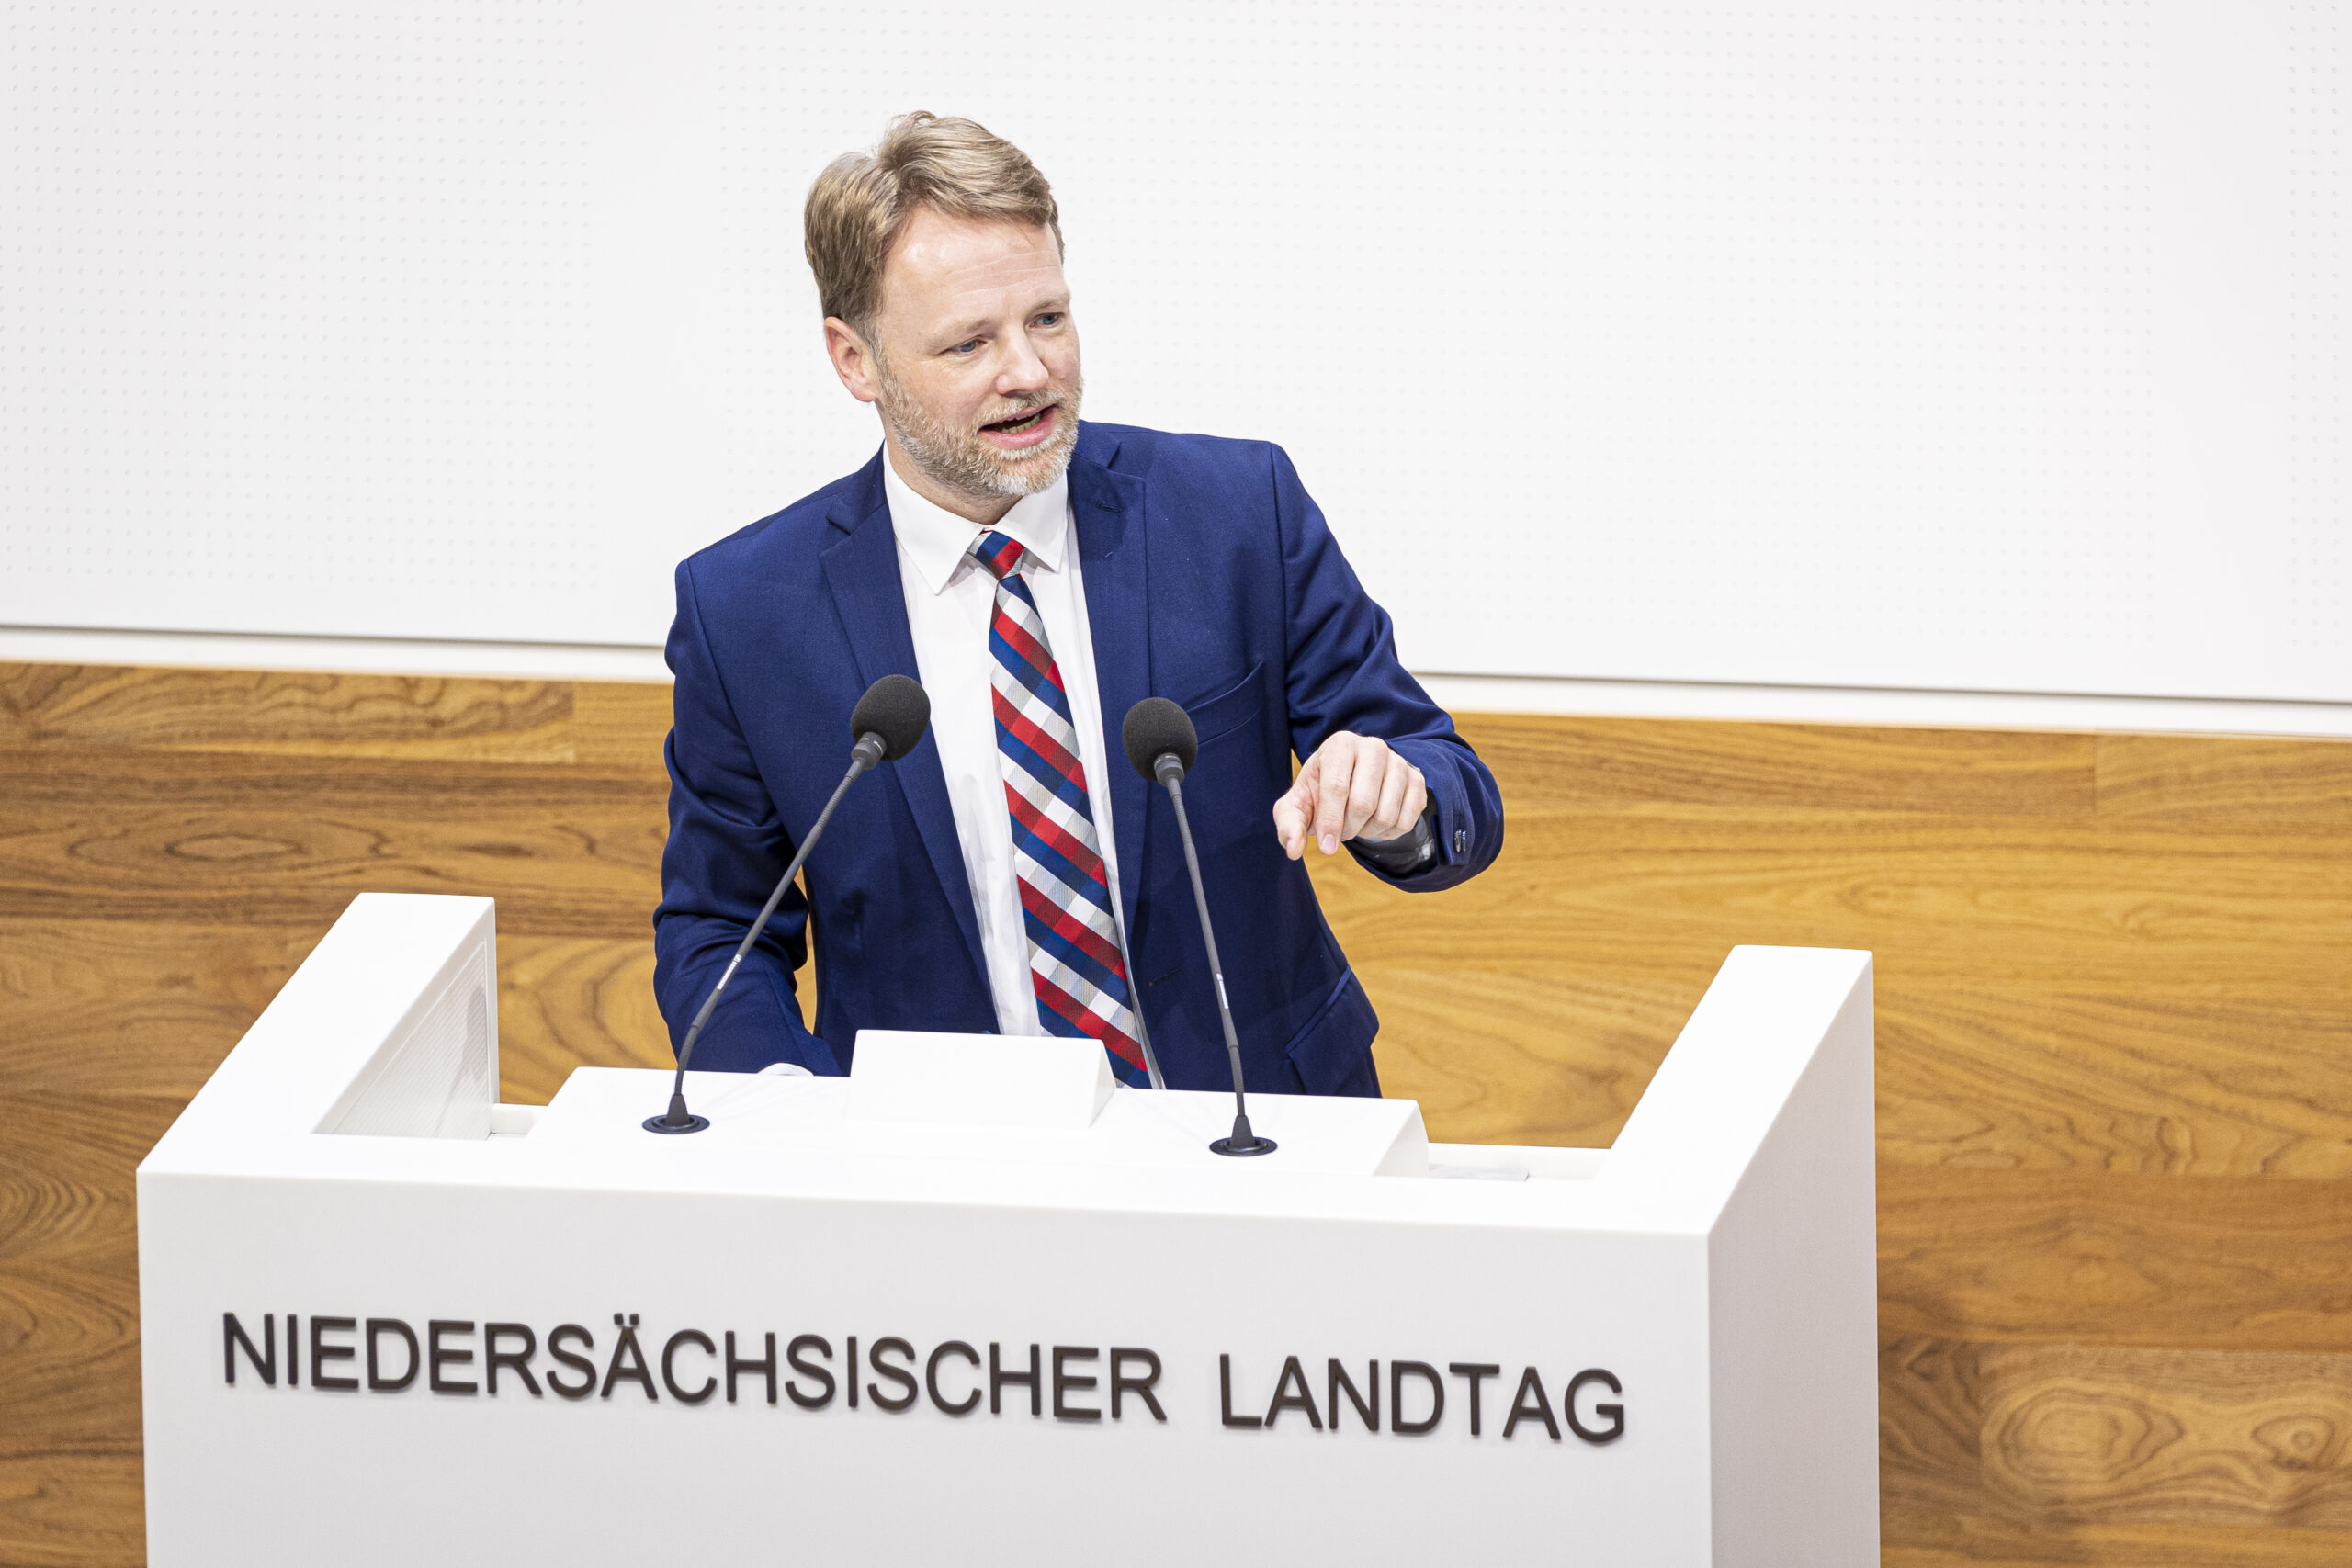 Gerald Heere (Bündnis 90/Die Grünen), Finanzminister von Niedersachsen, spricht im niedersächsischen Landtag.